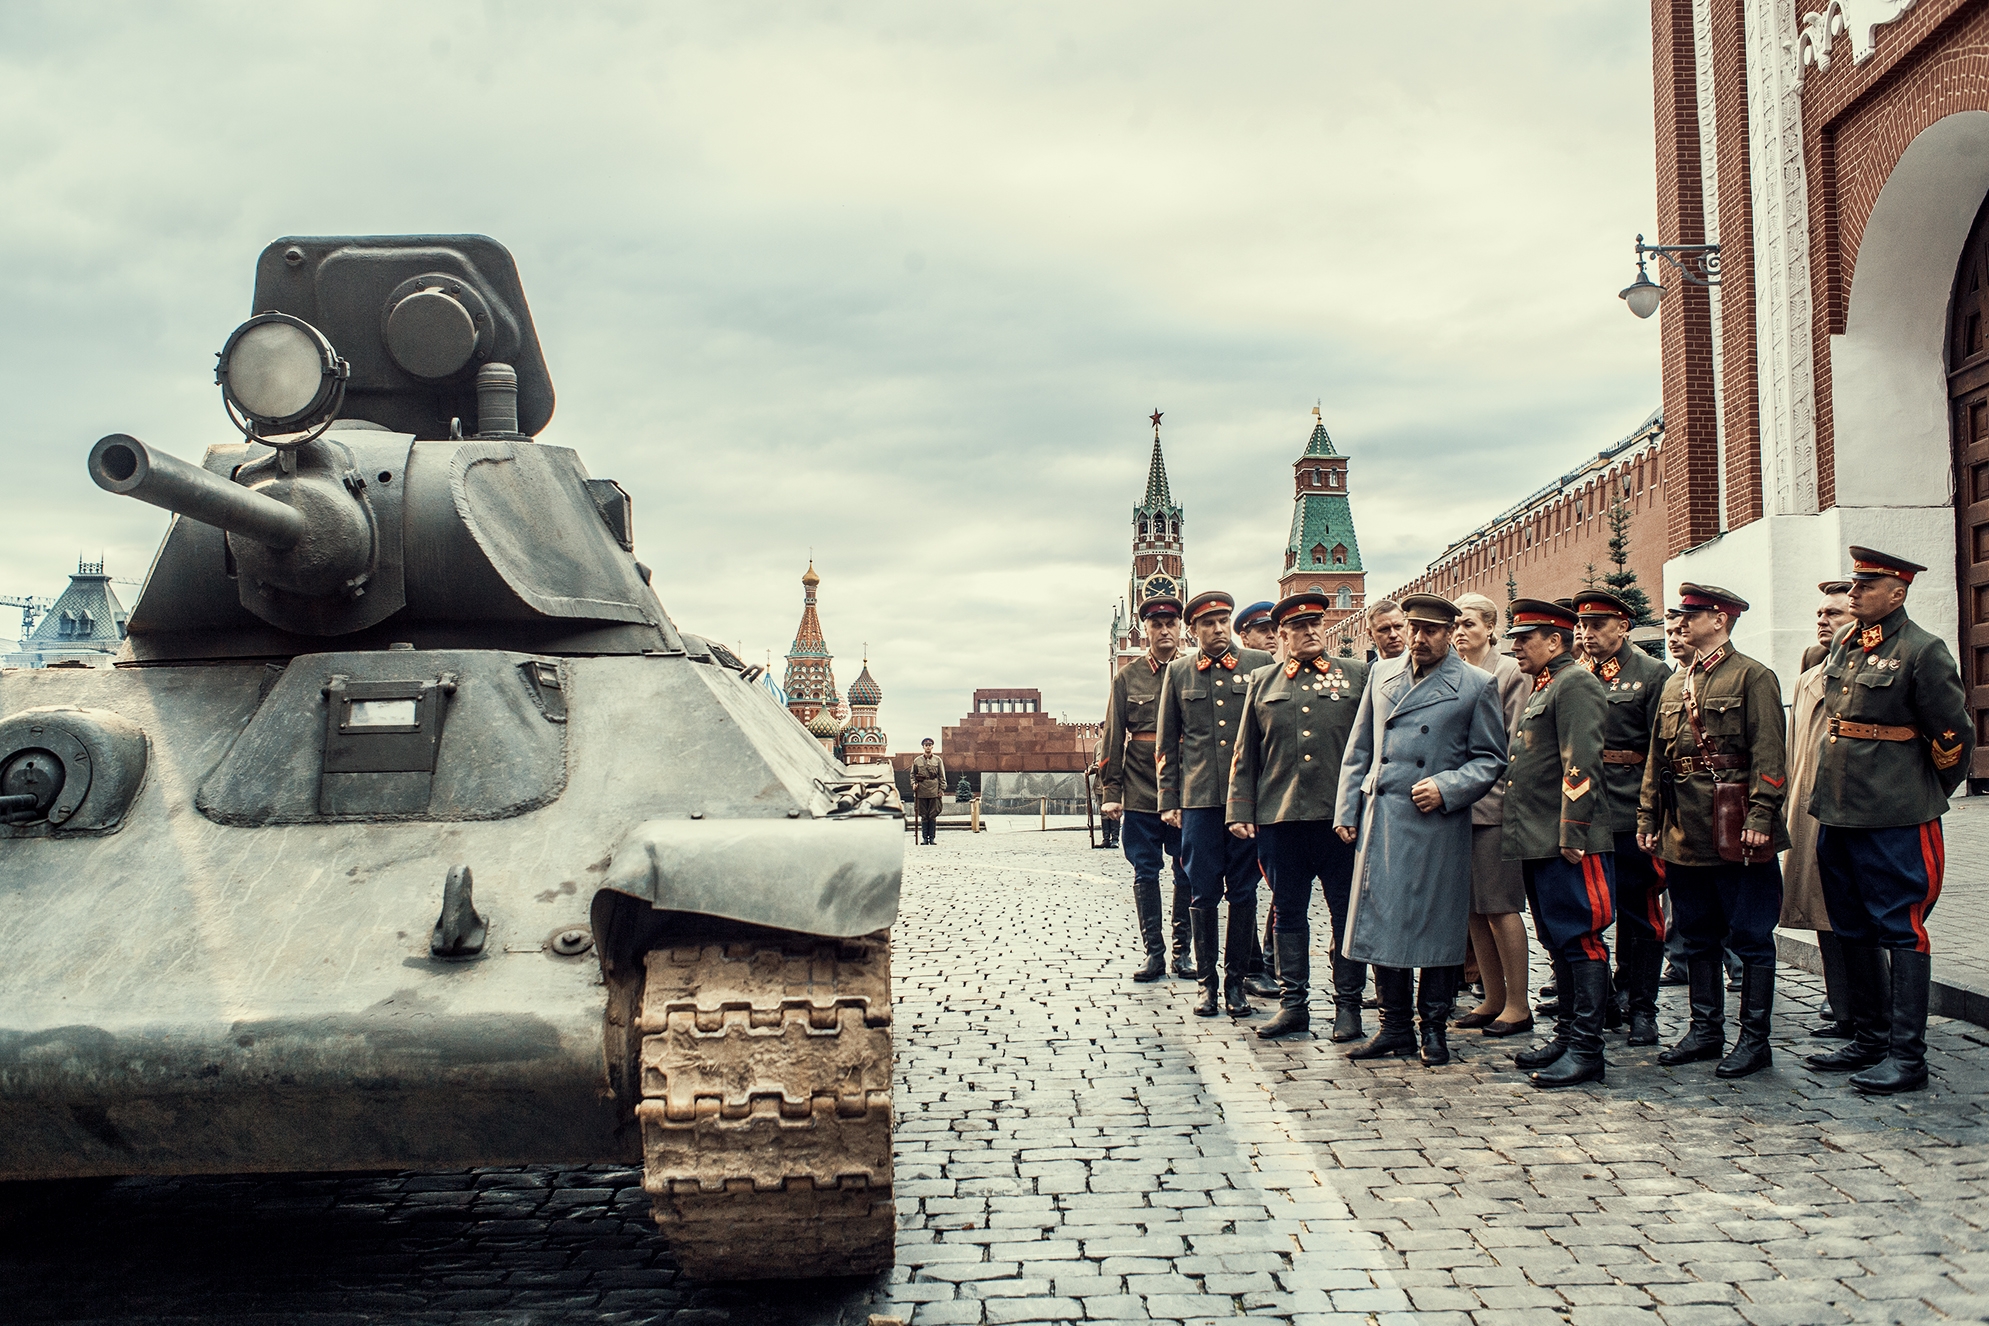 Трейлер фильма про танк Т-34 появился в Сети